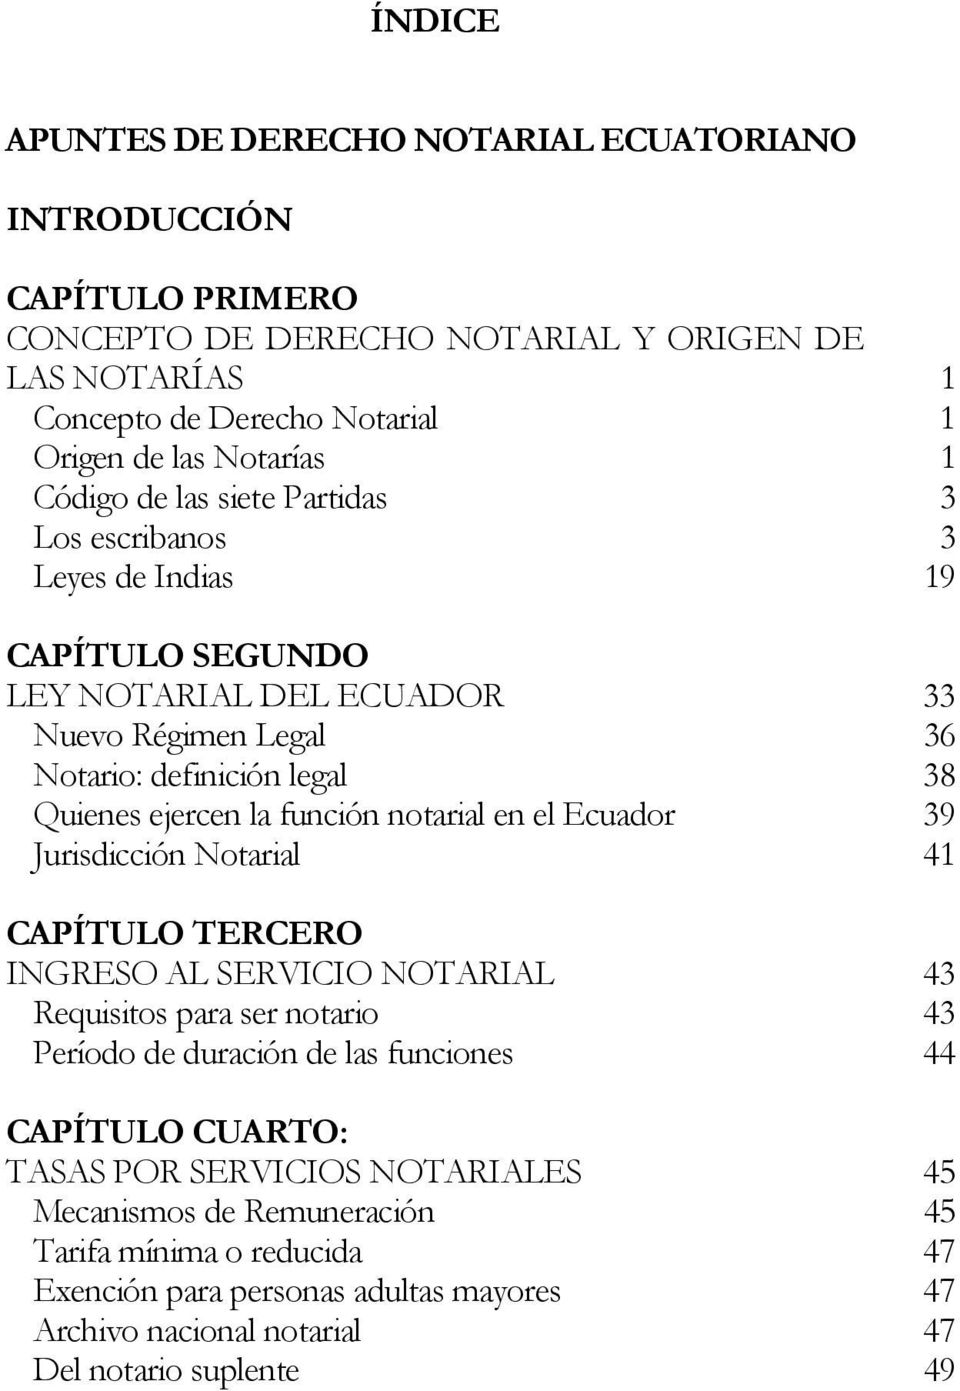 función notarial en el Ecuador 39 Jurisdicción Notarial 41 CAPÍTULO TERCERO INGRESO AL SERVICIO NOTARIAL 43 Requisitos para ser notario 43 Período de duración de las funciones 44 CAPÍTULO